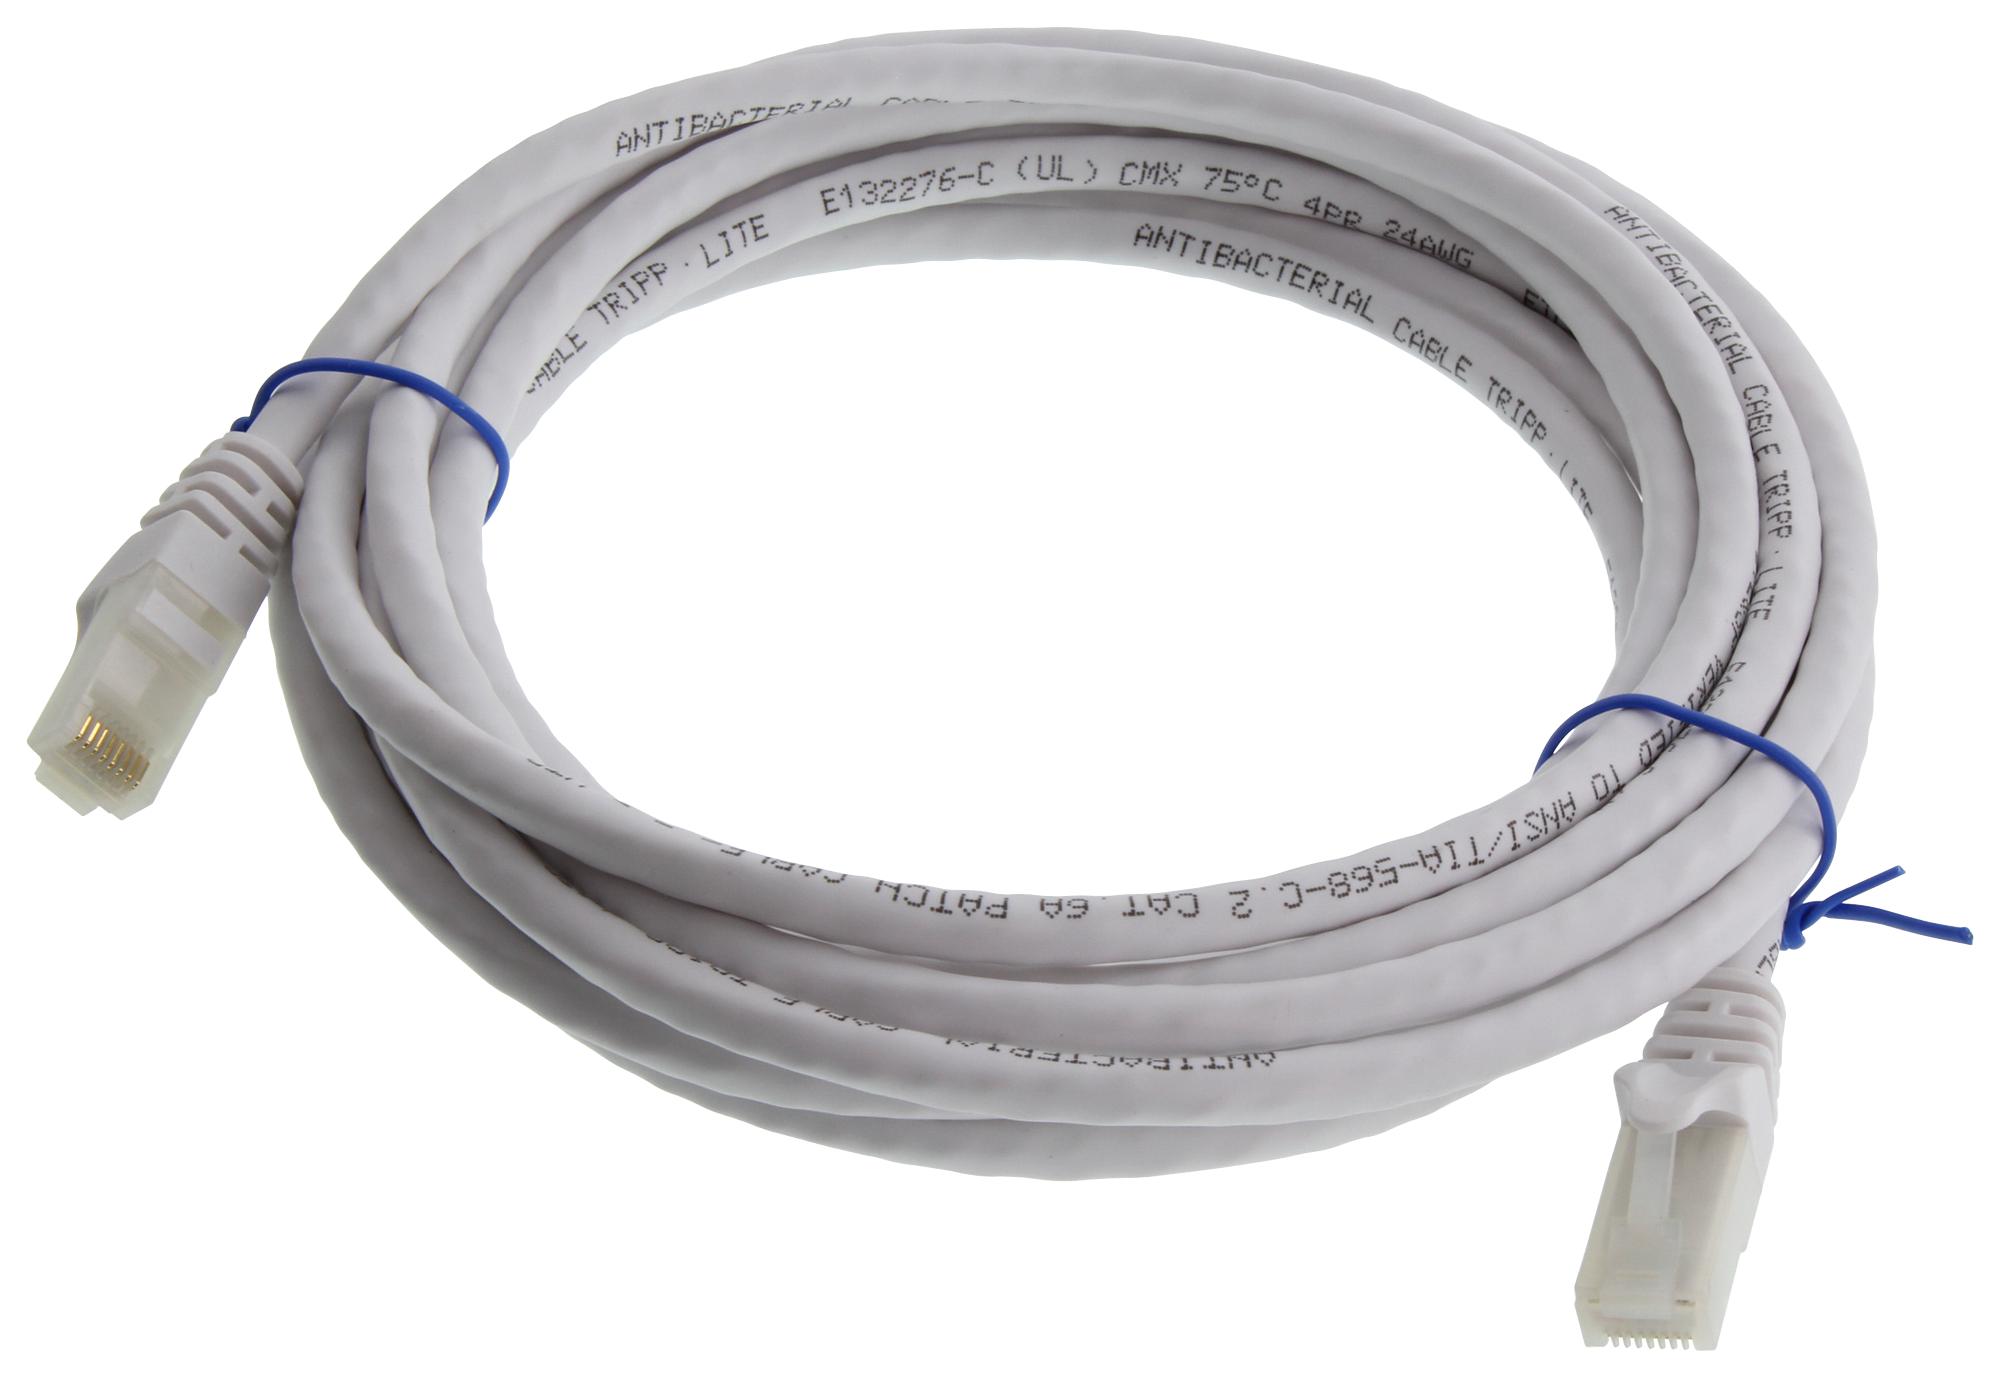 Eaton Tripp Lite N261Ab-014-Wh Enet Cable, Rj45 Plug-Plug, 14Ft, White